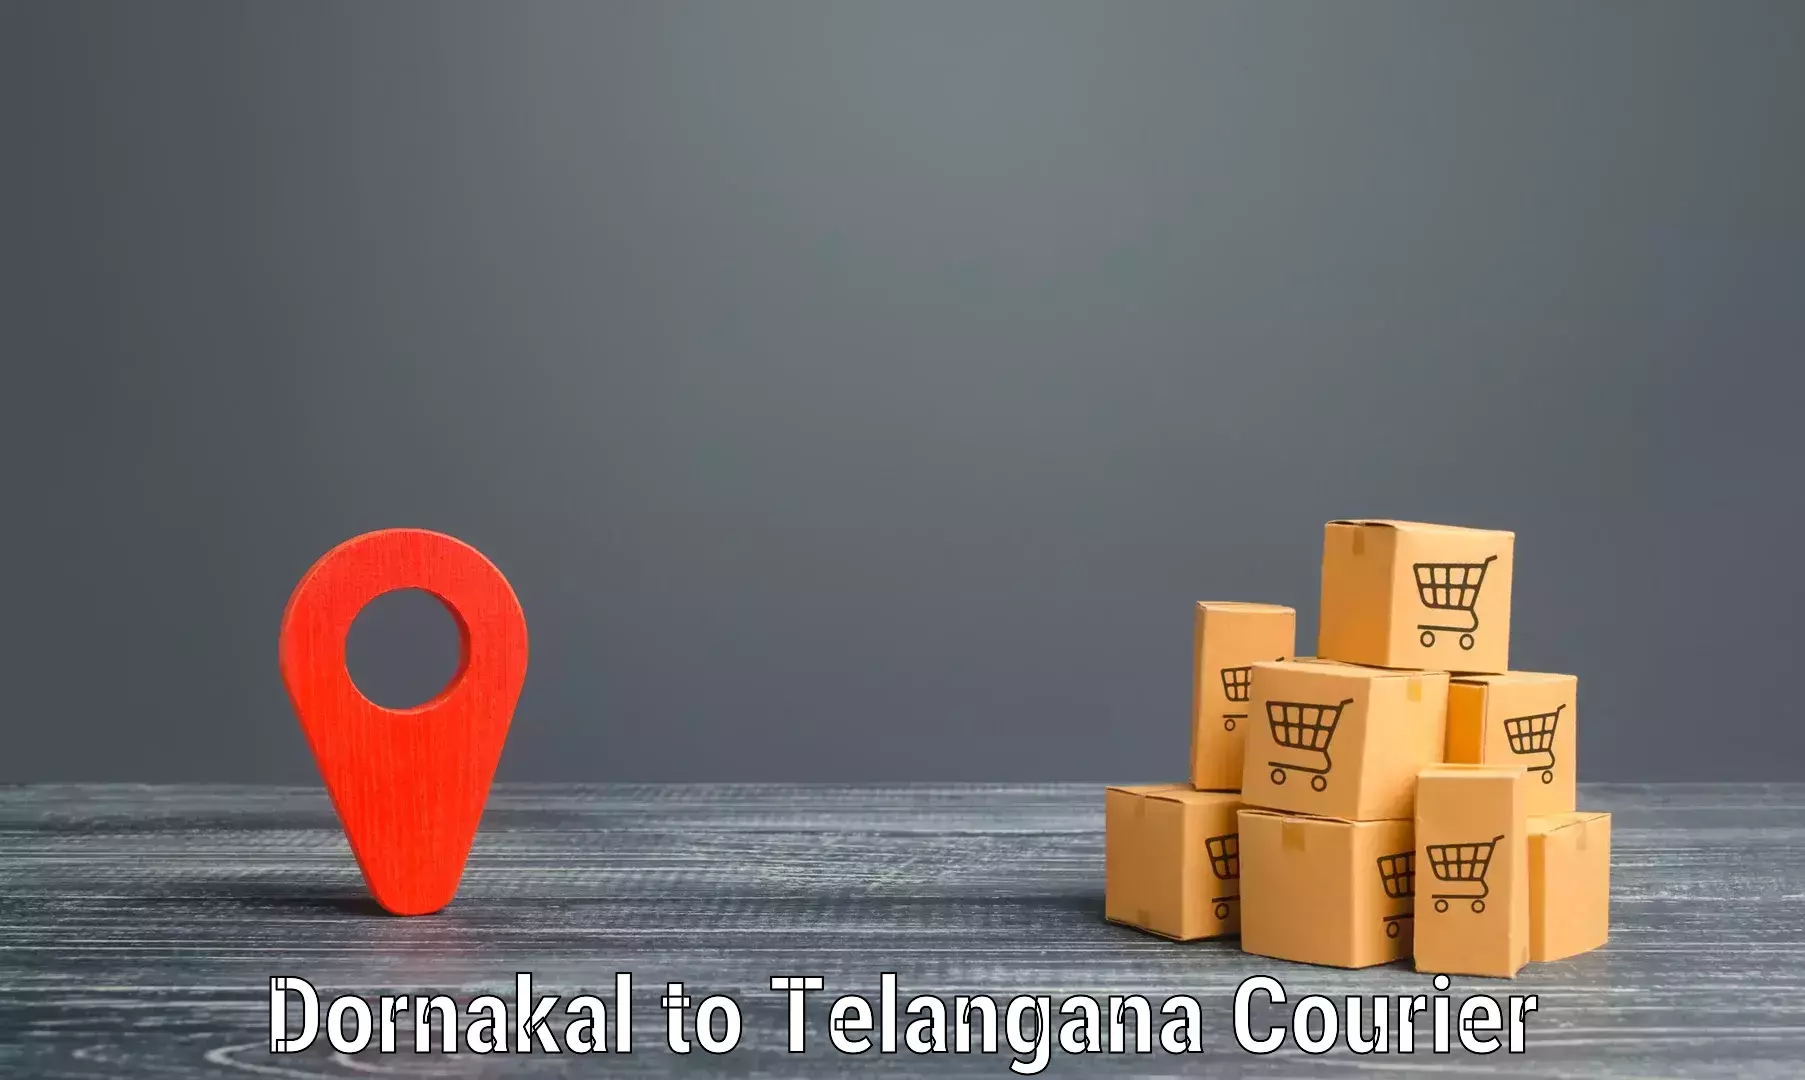 Smart logistics solutions in Dornakal to Kothakota